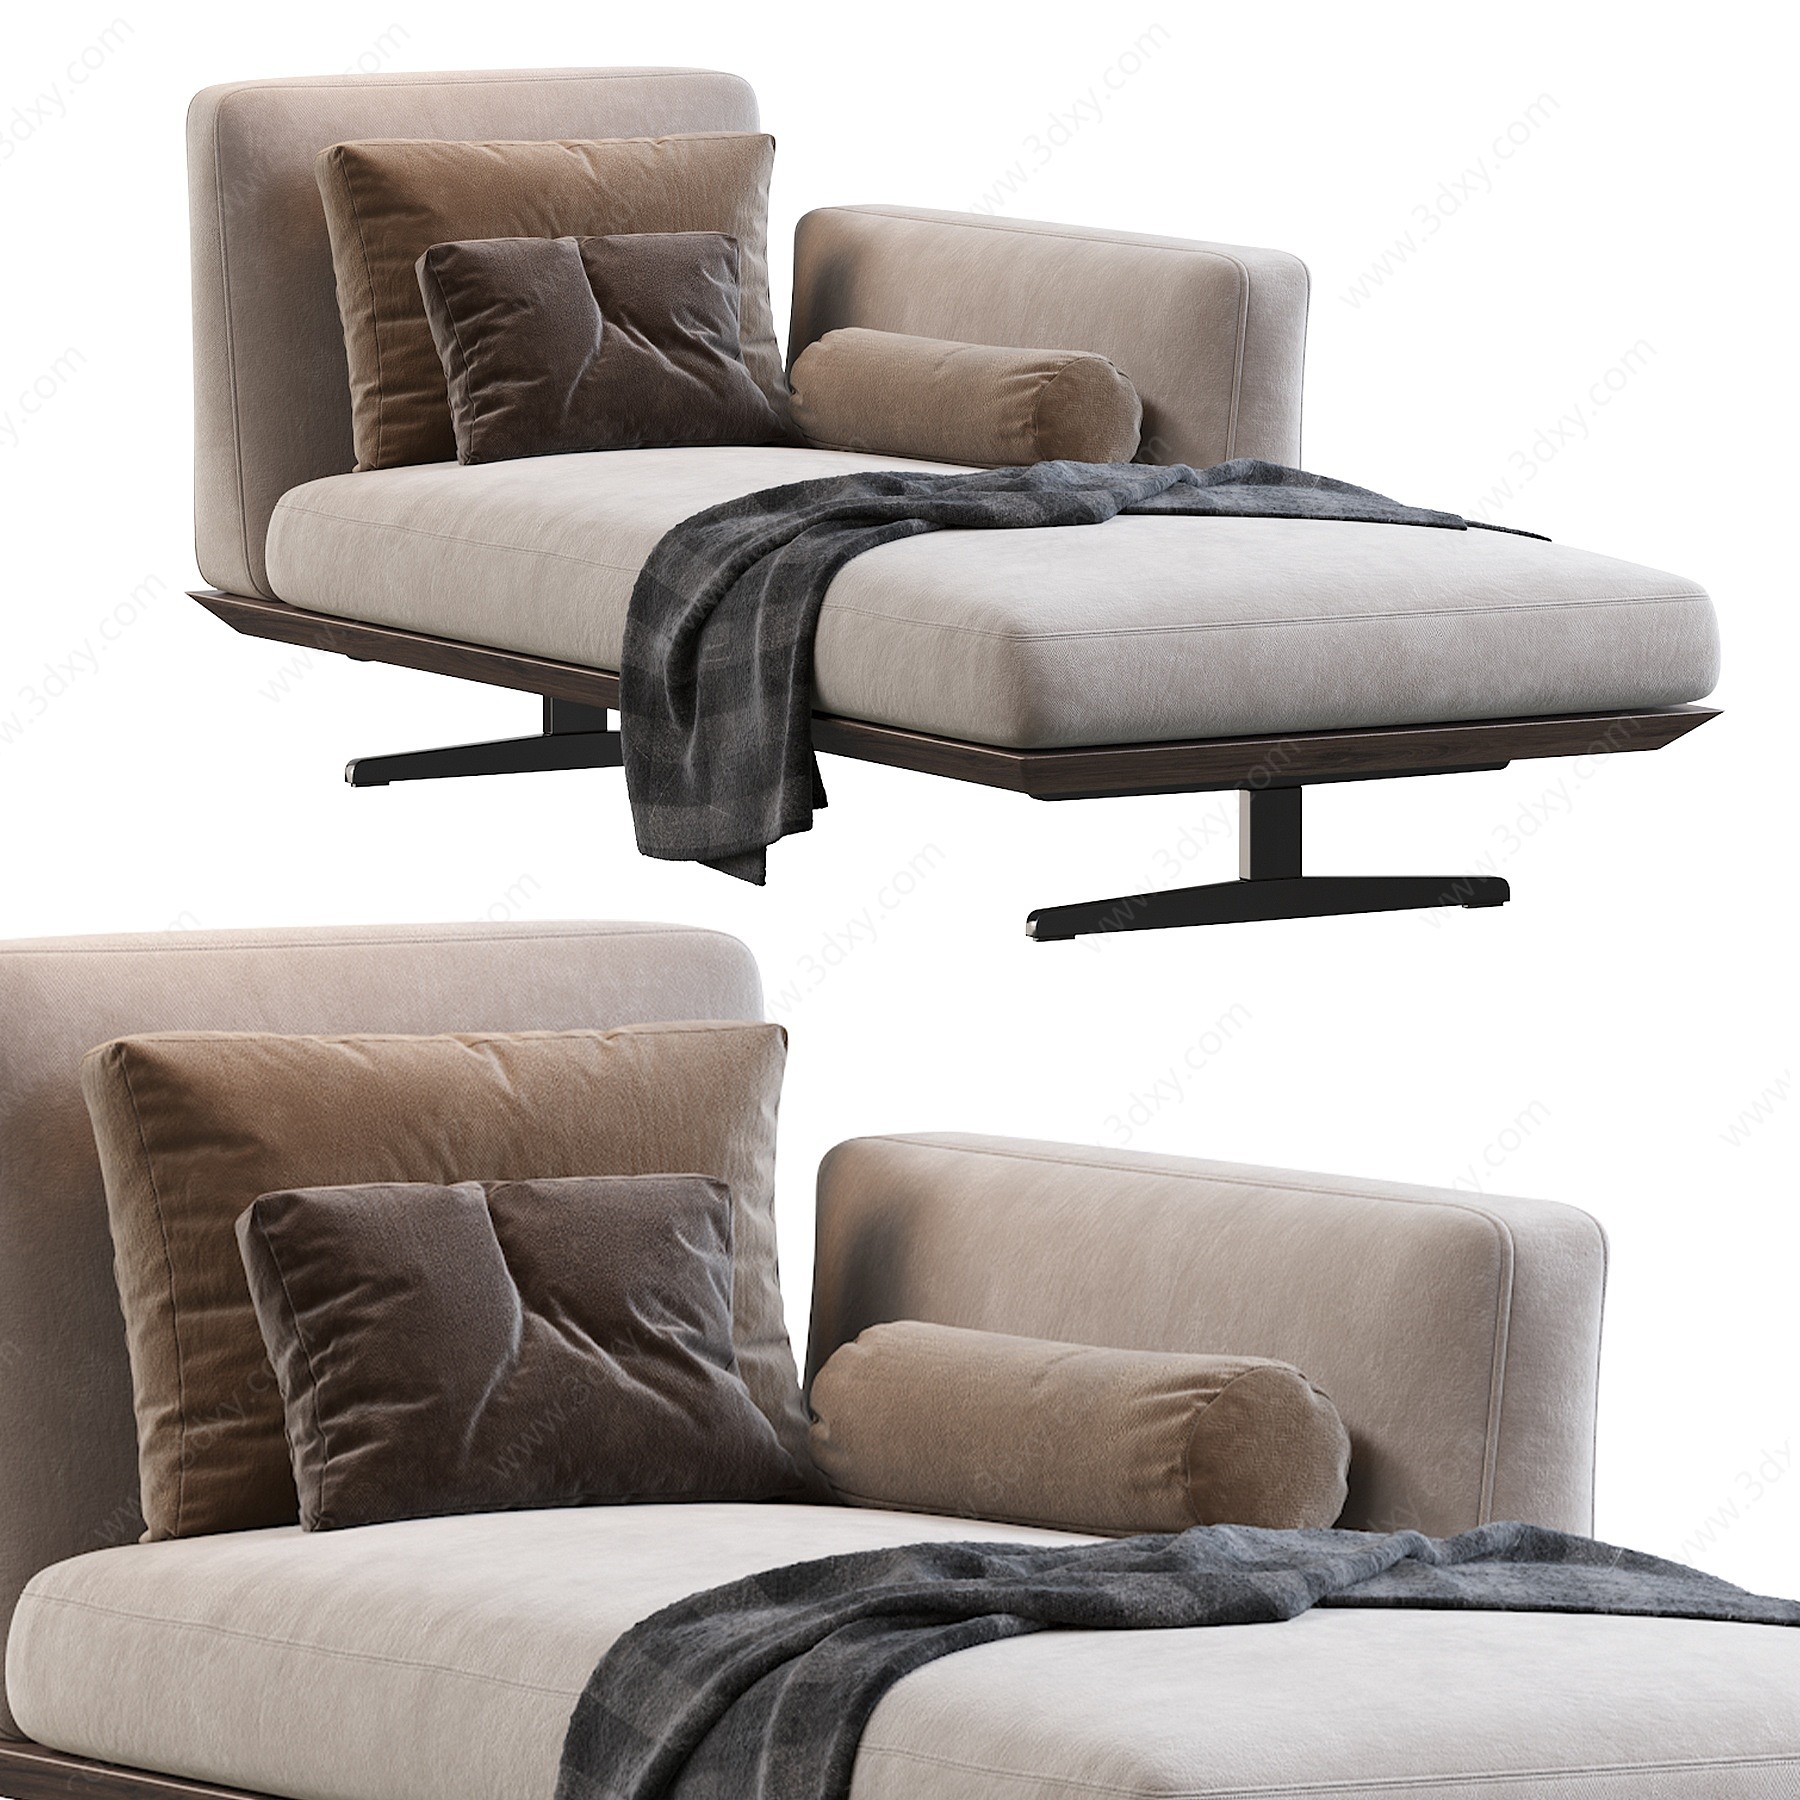 Evergreen现代躺椅3D模型